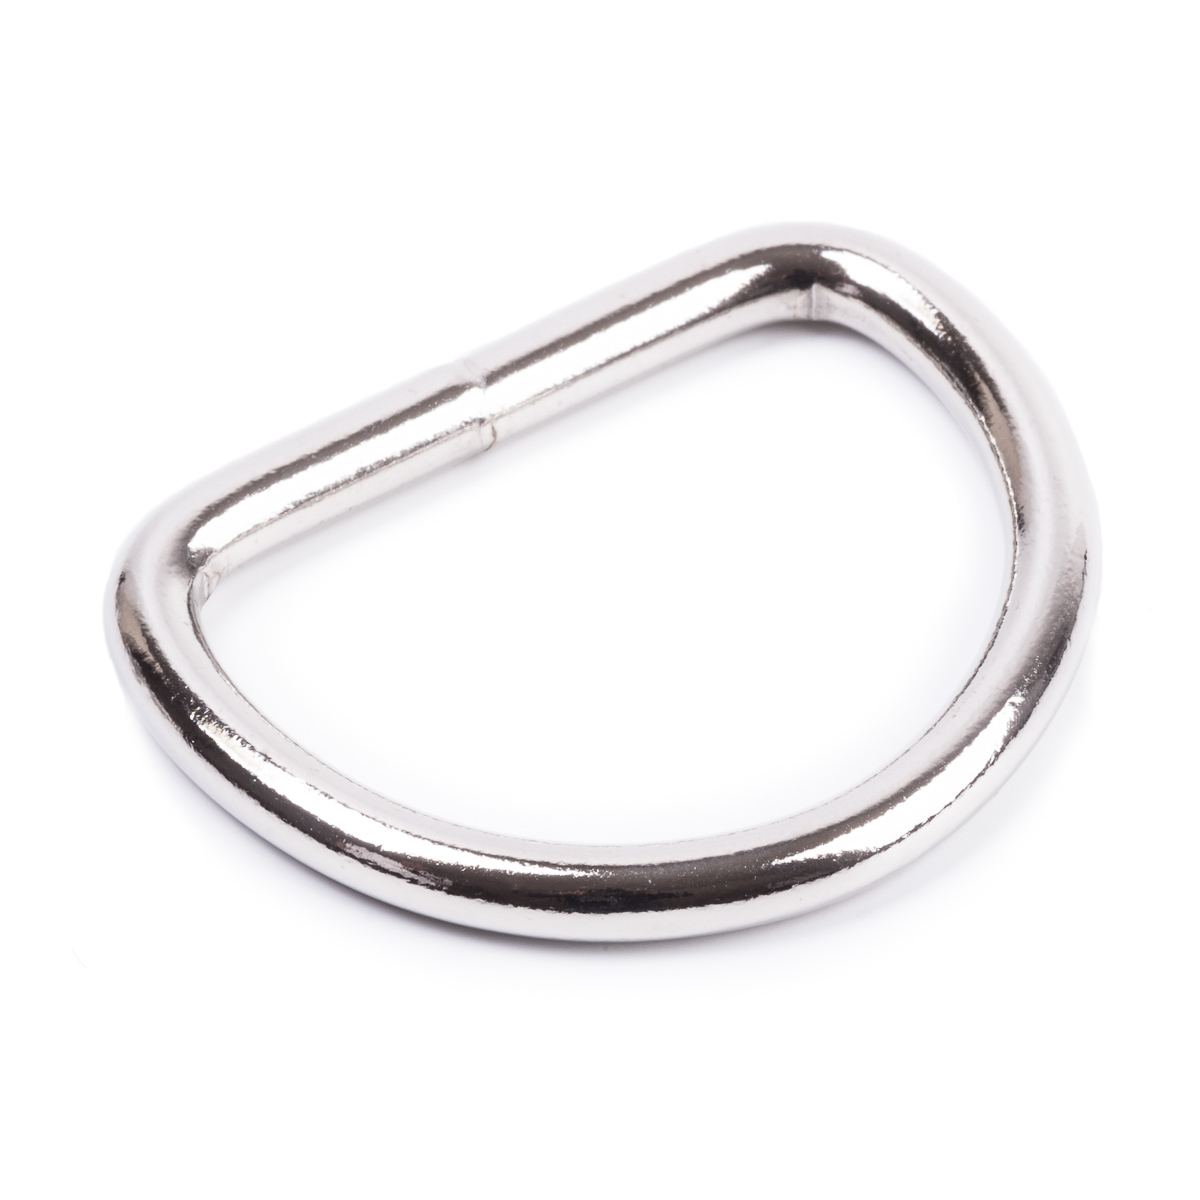 10 x Halbrund-Ring  35 x 5,5 mm verzinkt D-Ring Ringe  Halbrund Ringe D-Ringe 